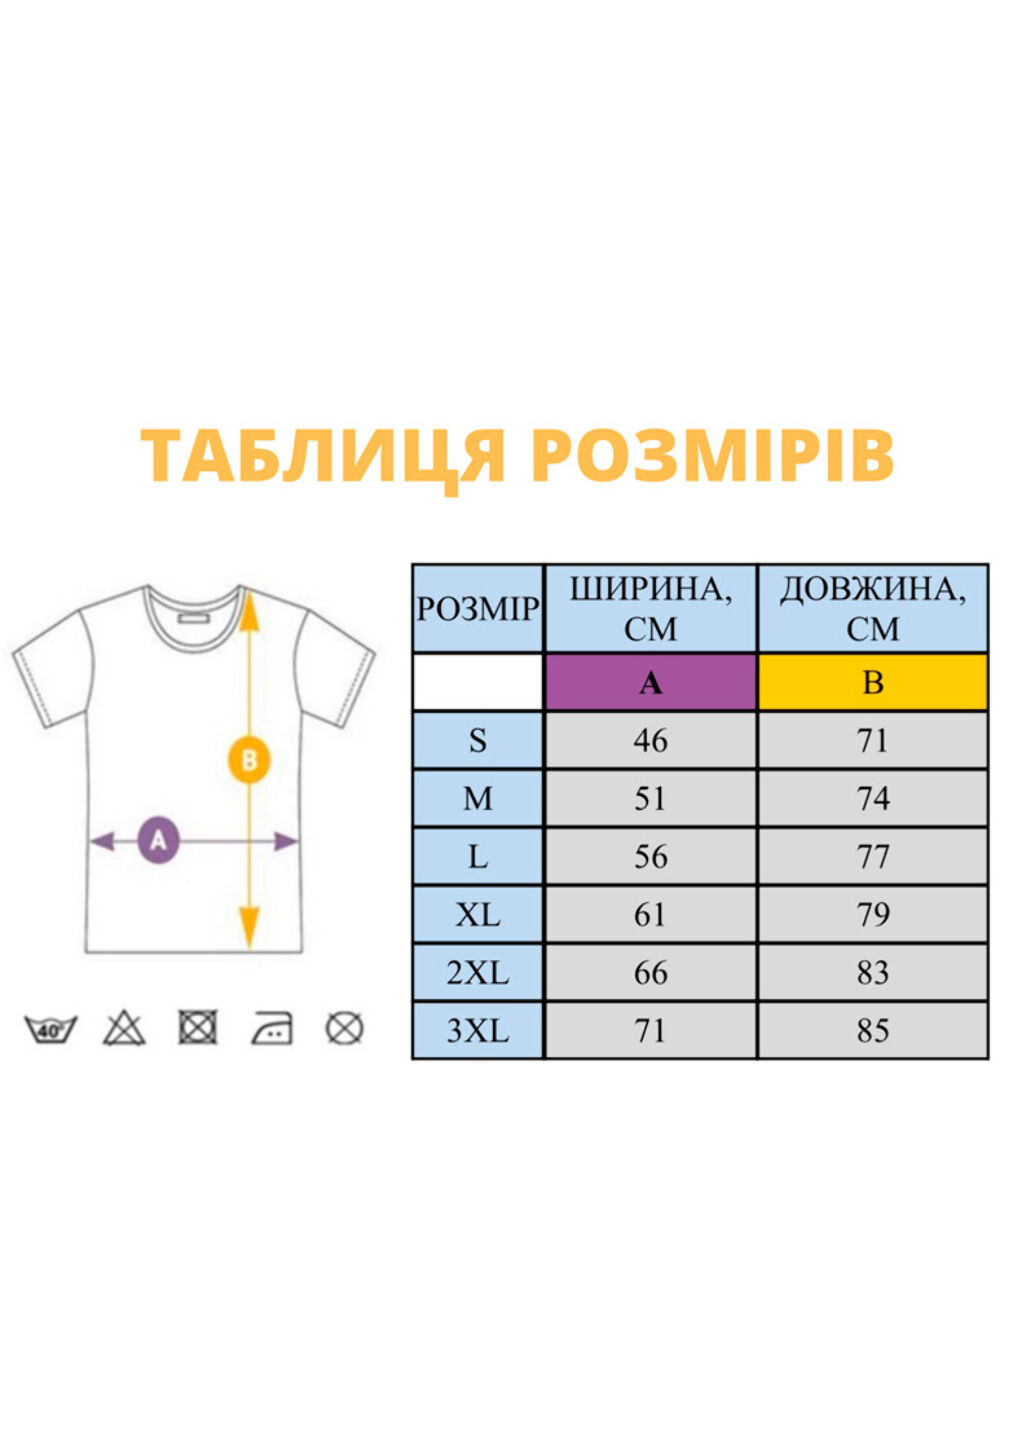 Хаки (оливковая) футболка с вышивкой пингвинов 01-4 мужская хаки 3xl No Brand